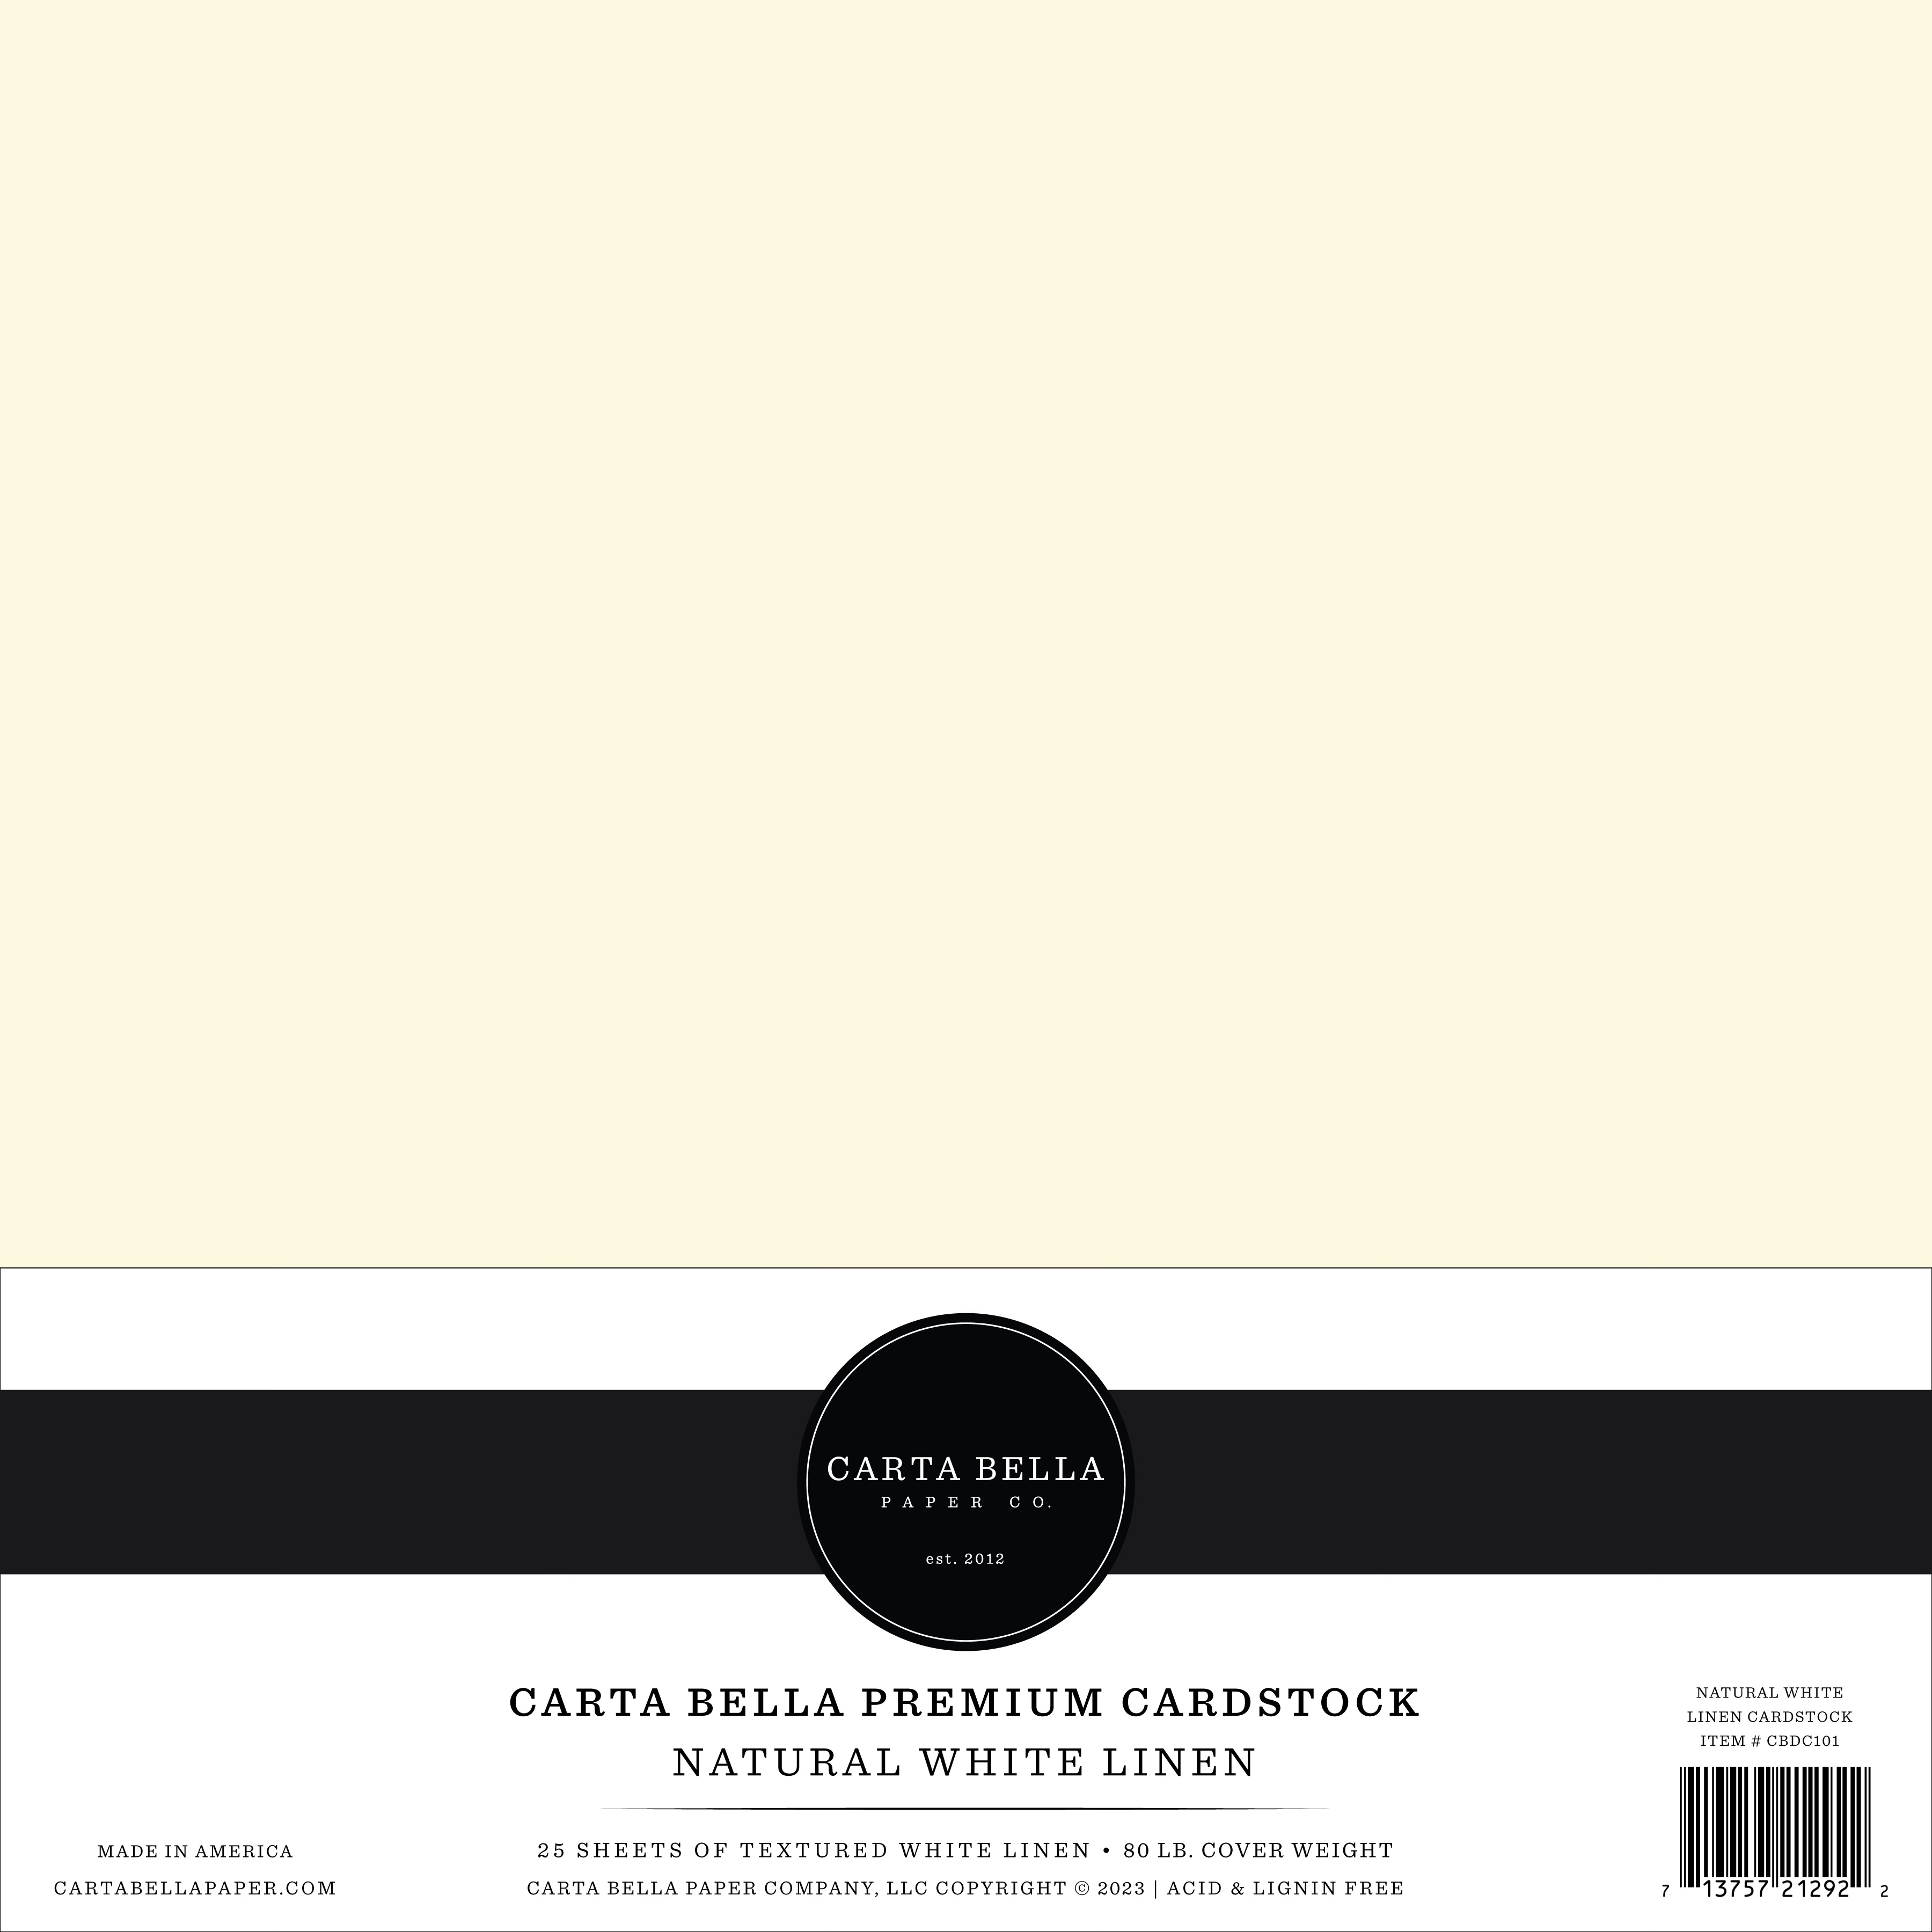 Carta Bella Designer 80 lb Cover Cardstock 12x12 Ebony Black Linen